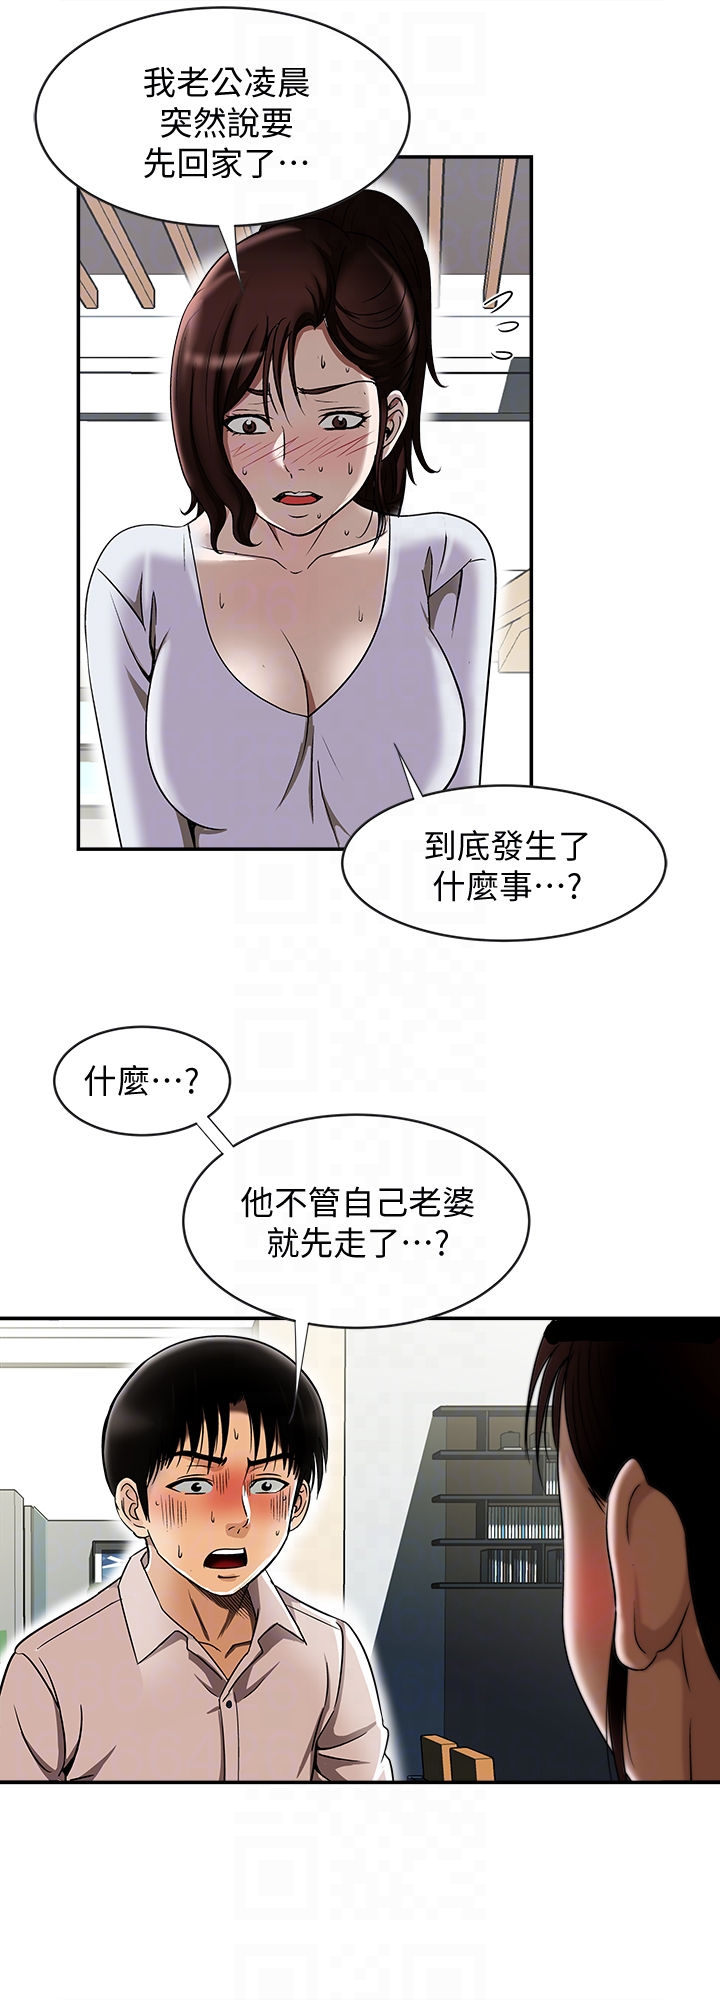 韩国污漫画 別人的老婆 第33话(第一季最终话)-全新的开始 15